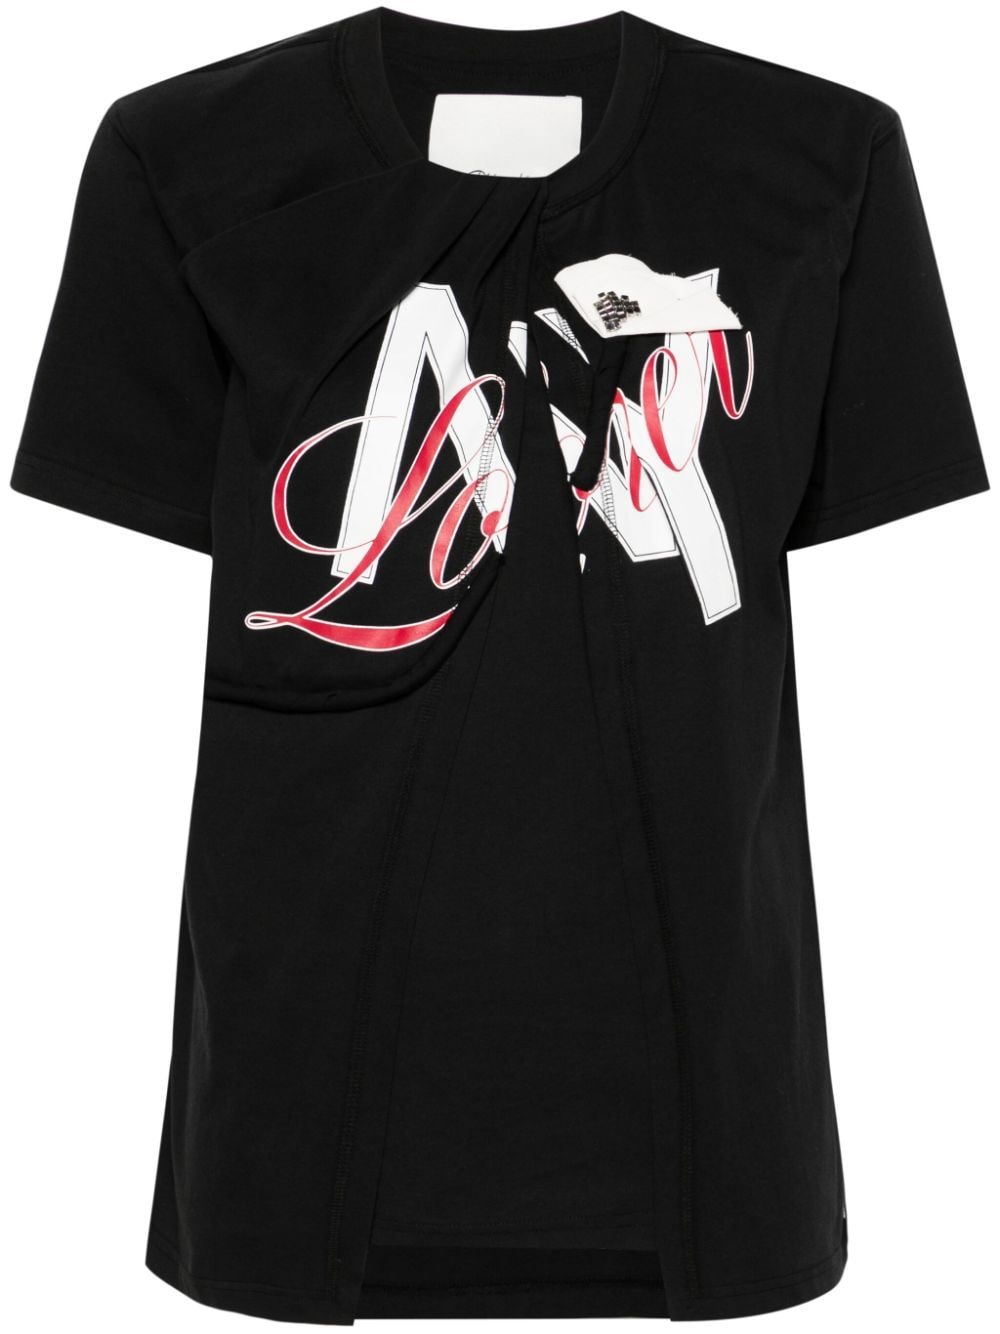 3.1 Phillip Lim NY Lover Sliced T-shirt - Black von 3.1 Phillip Lim